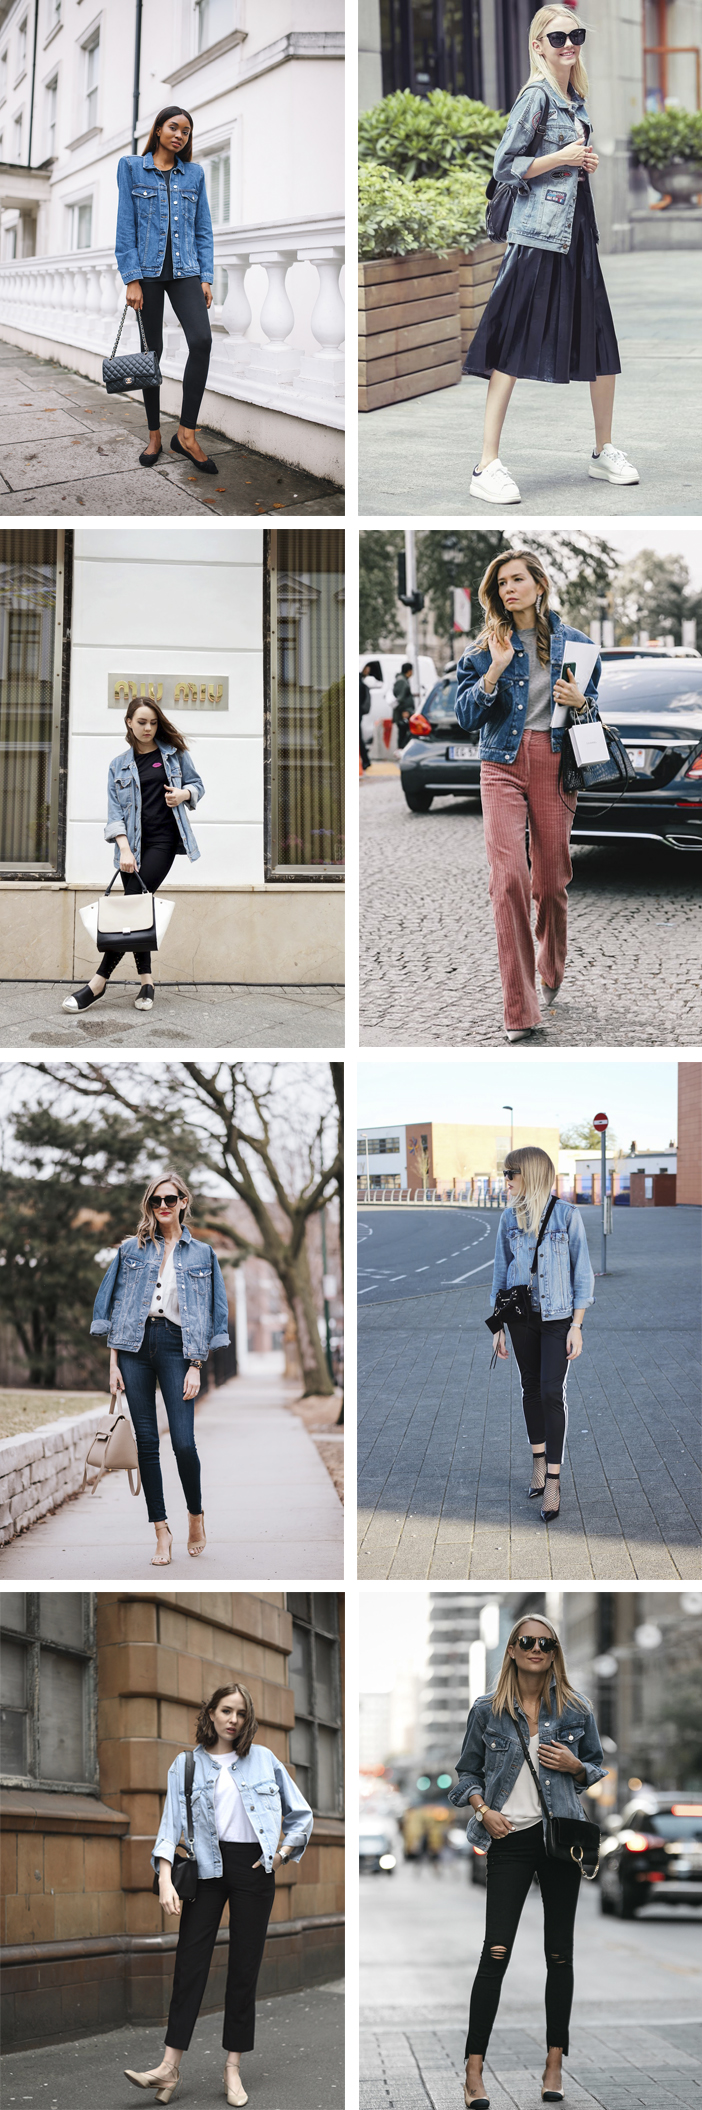 Inspiração - Looks com jaqueta jeans